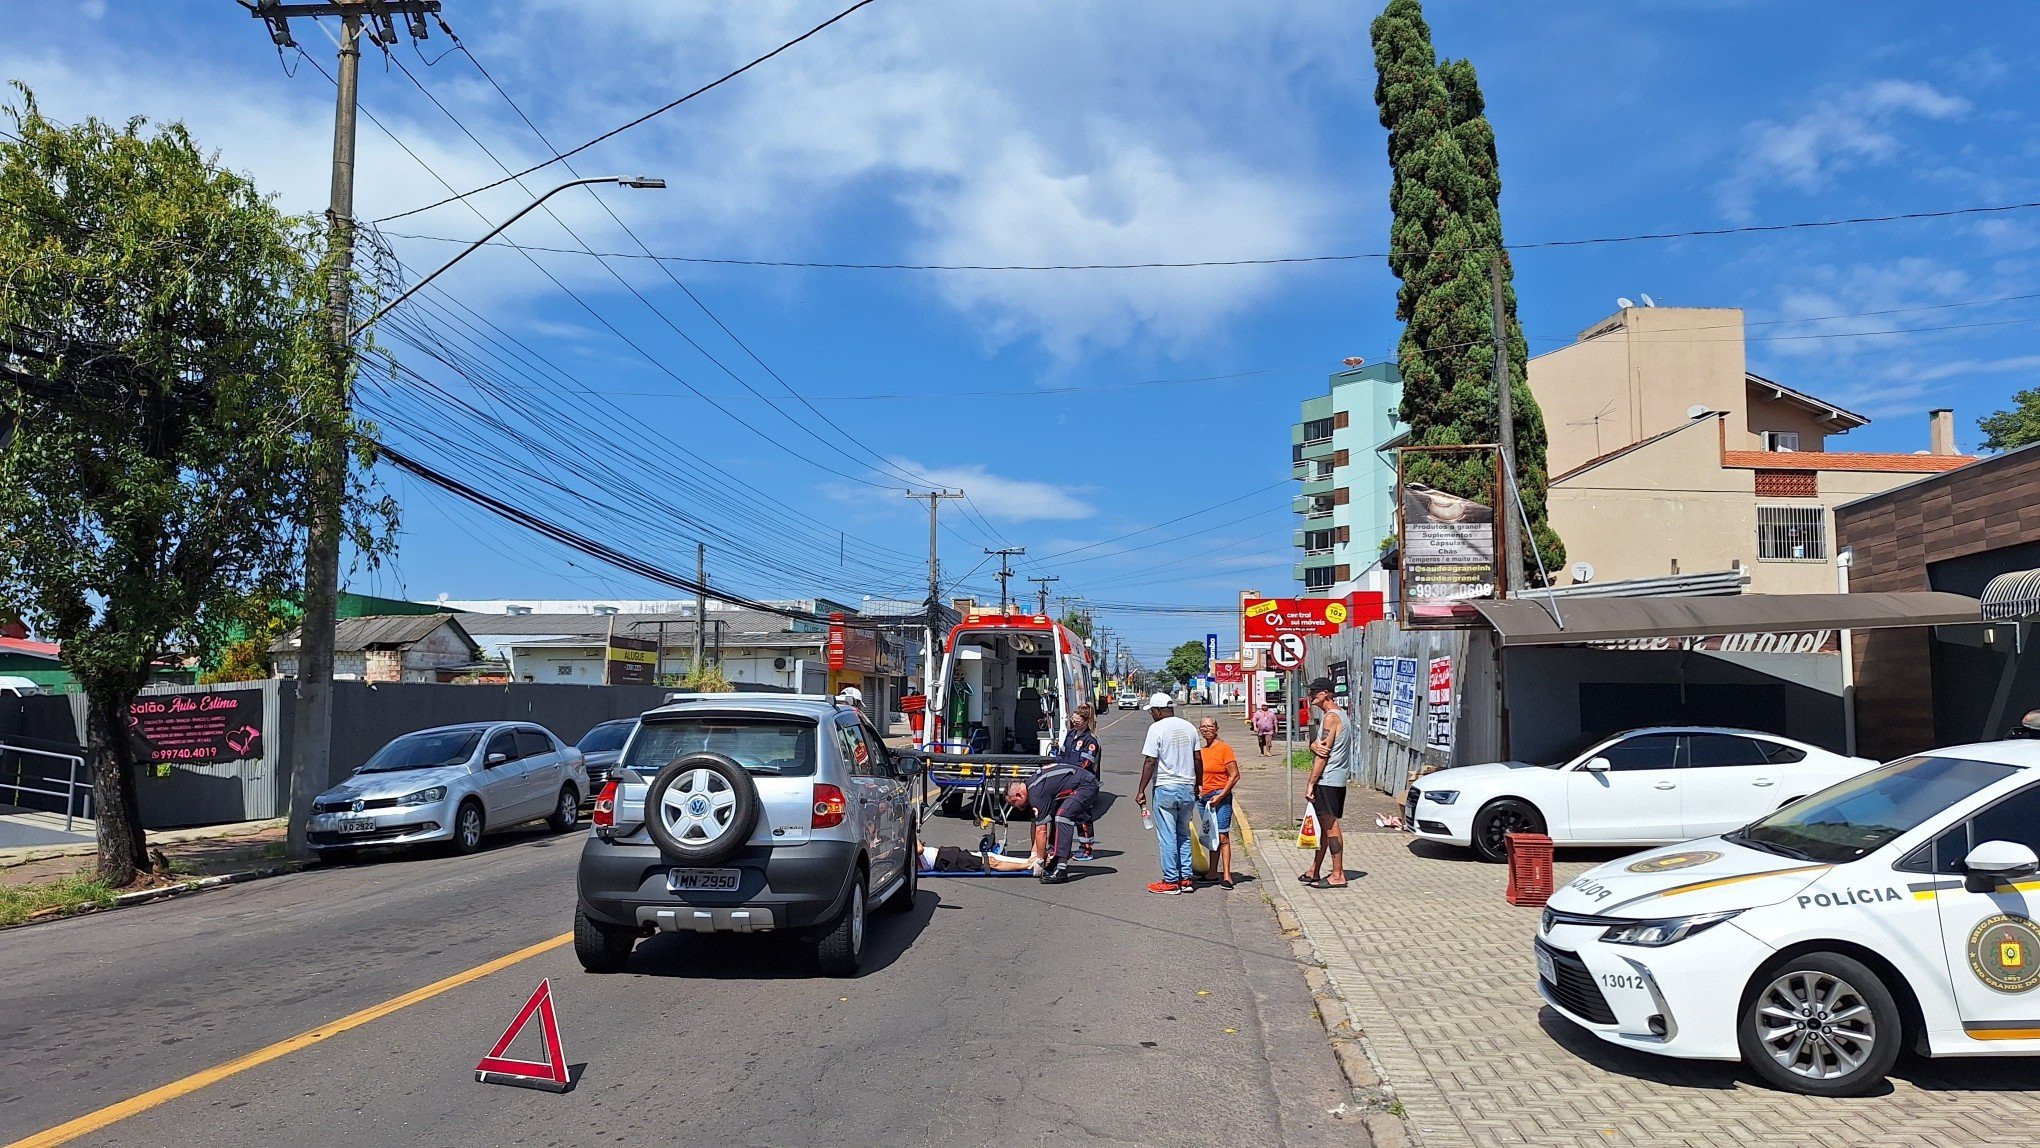 ACIDENTE DE TRÂNSITO: Motociclista fica com fratura exposta em colisão com carro no bairro Canudos